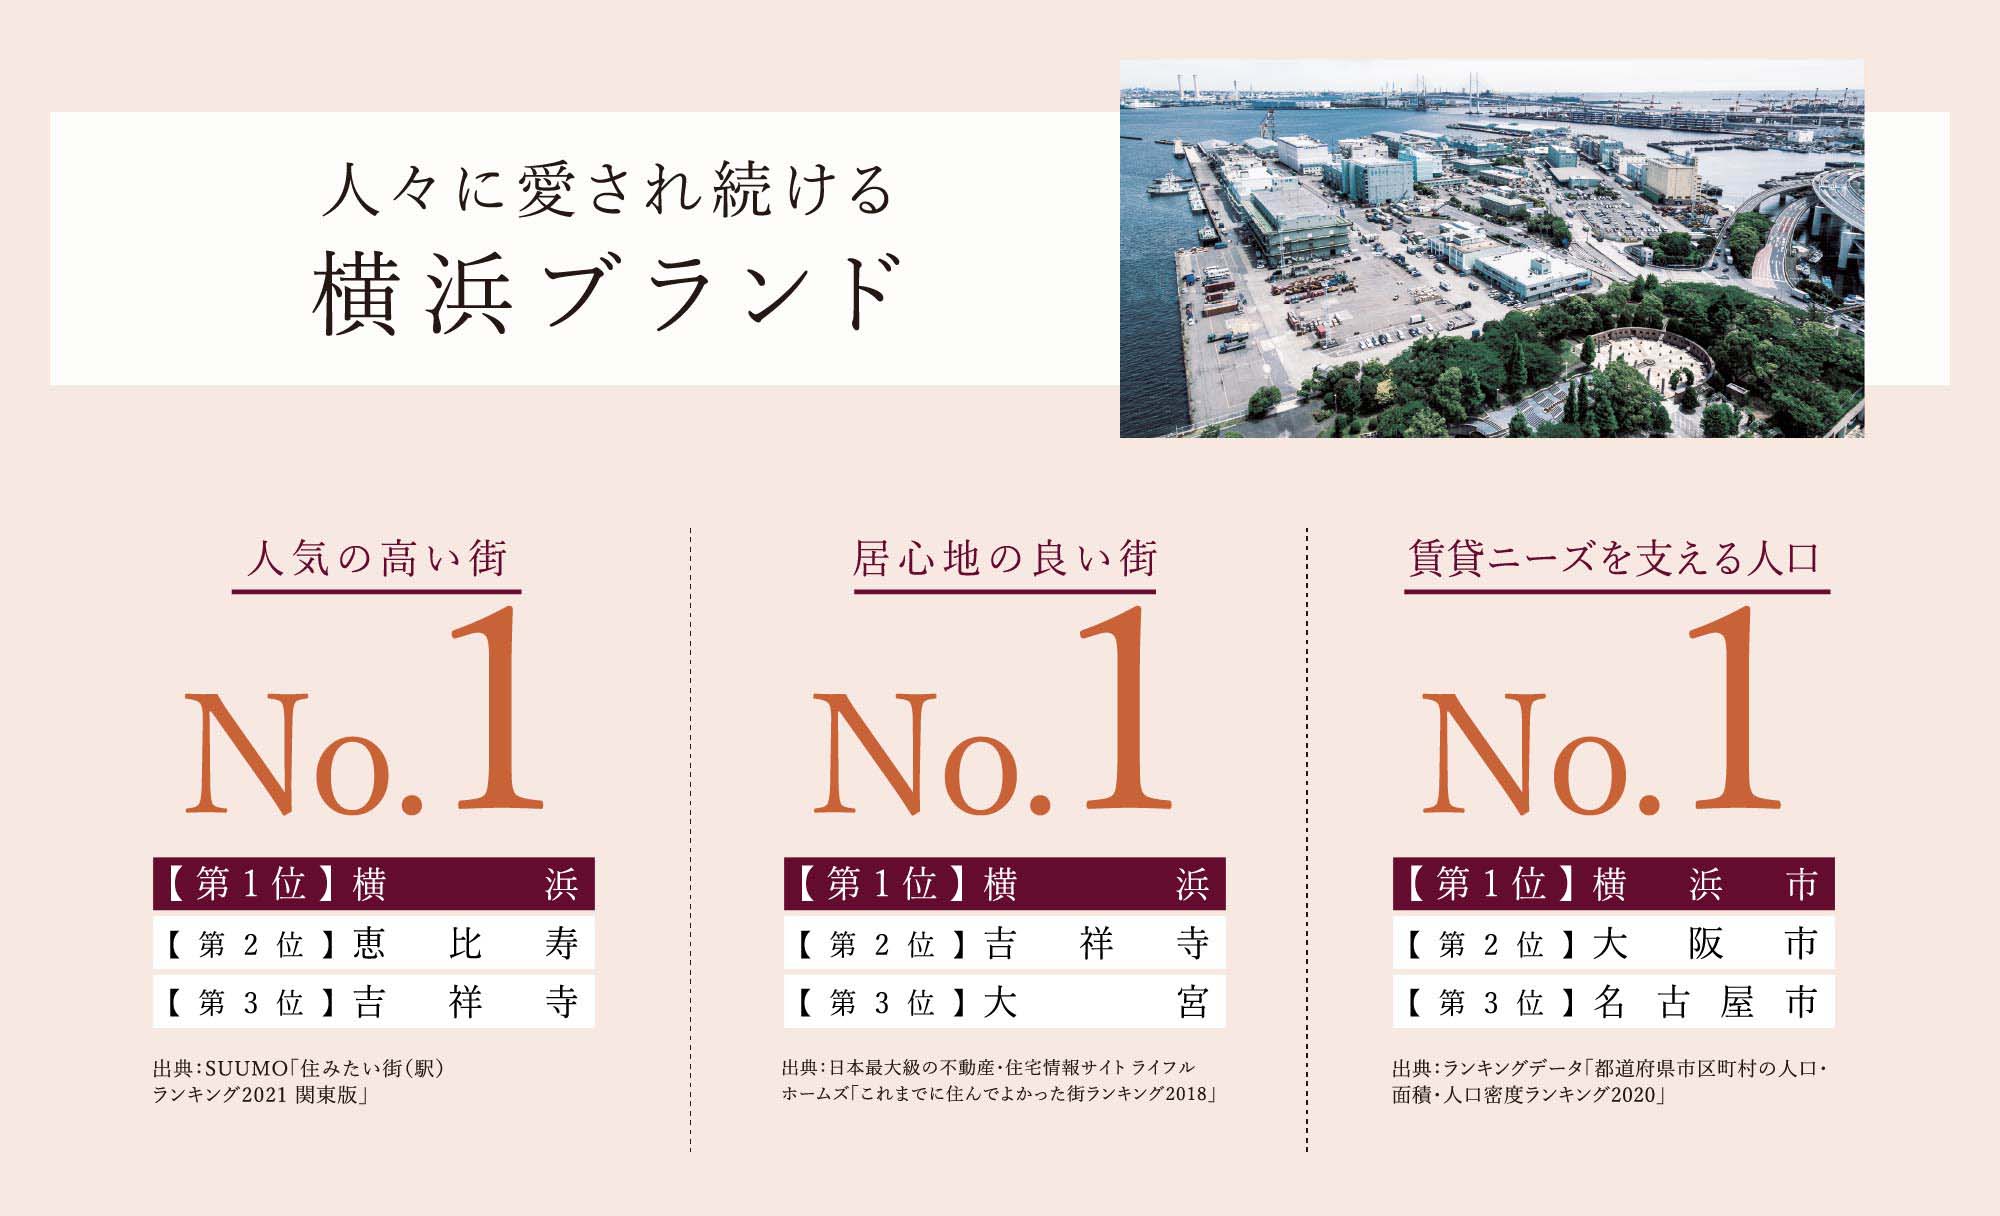 人々に愛され続ける横浜ブランド：人気の高い街No.1、居心地の良い街No.1、賃貸ニーズを支える人口No.1、